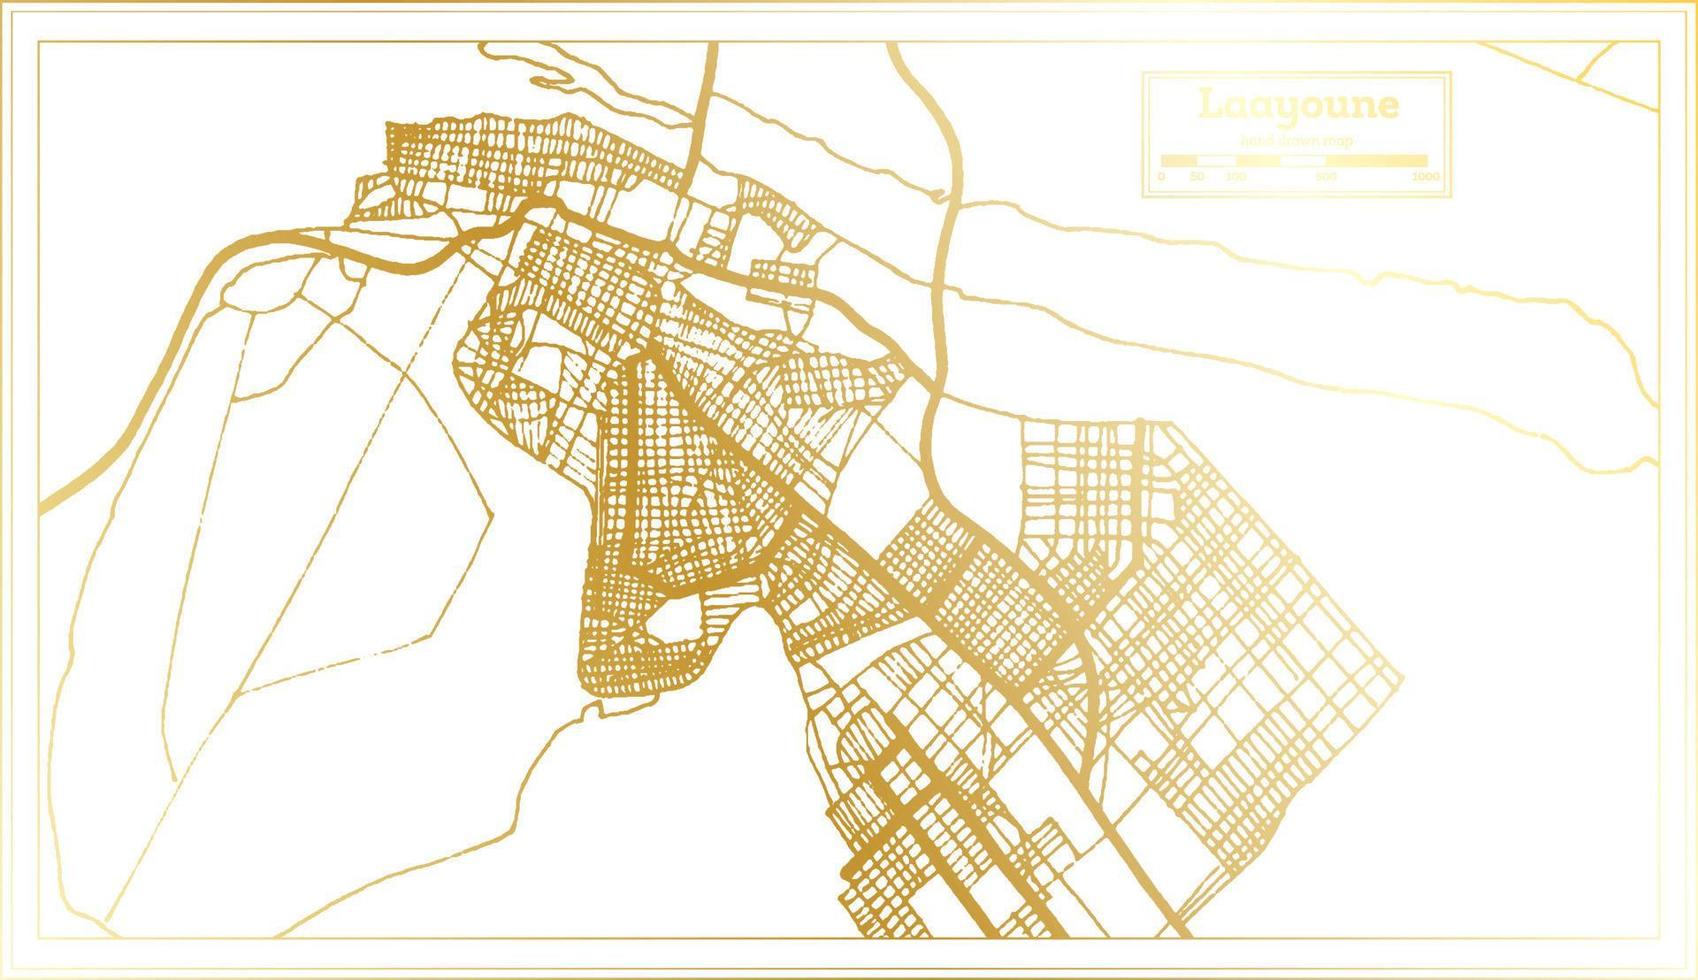 laayoune sahara stadtplan im retro-stil in goldener farbe. Übersichtskarte. vektor